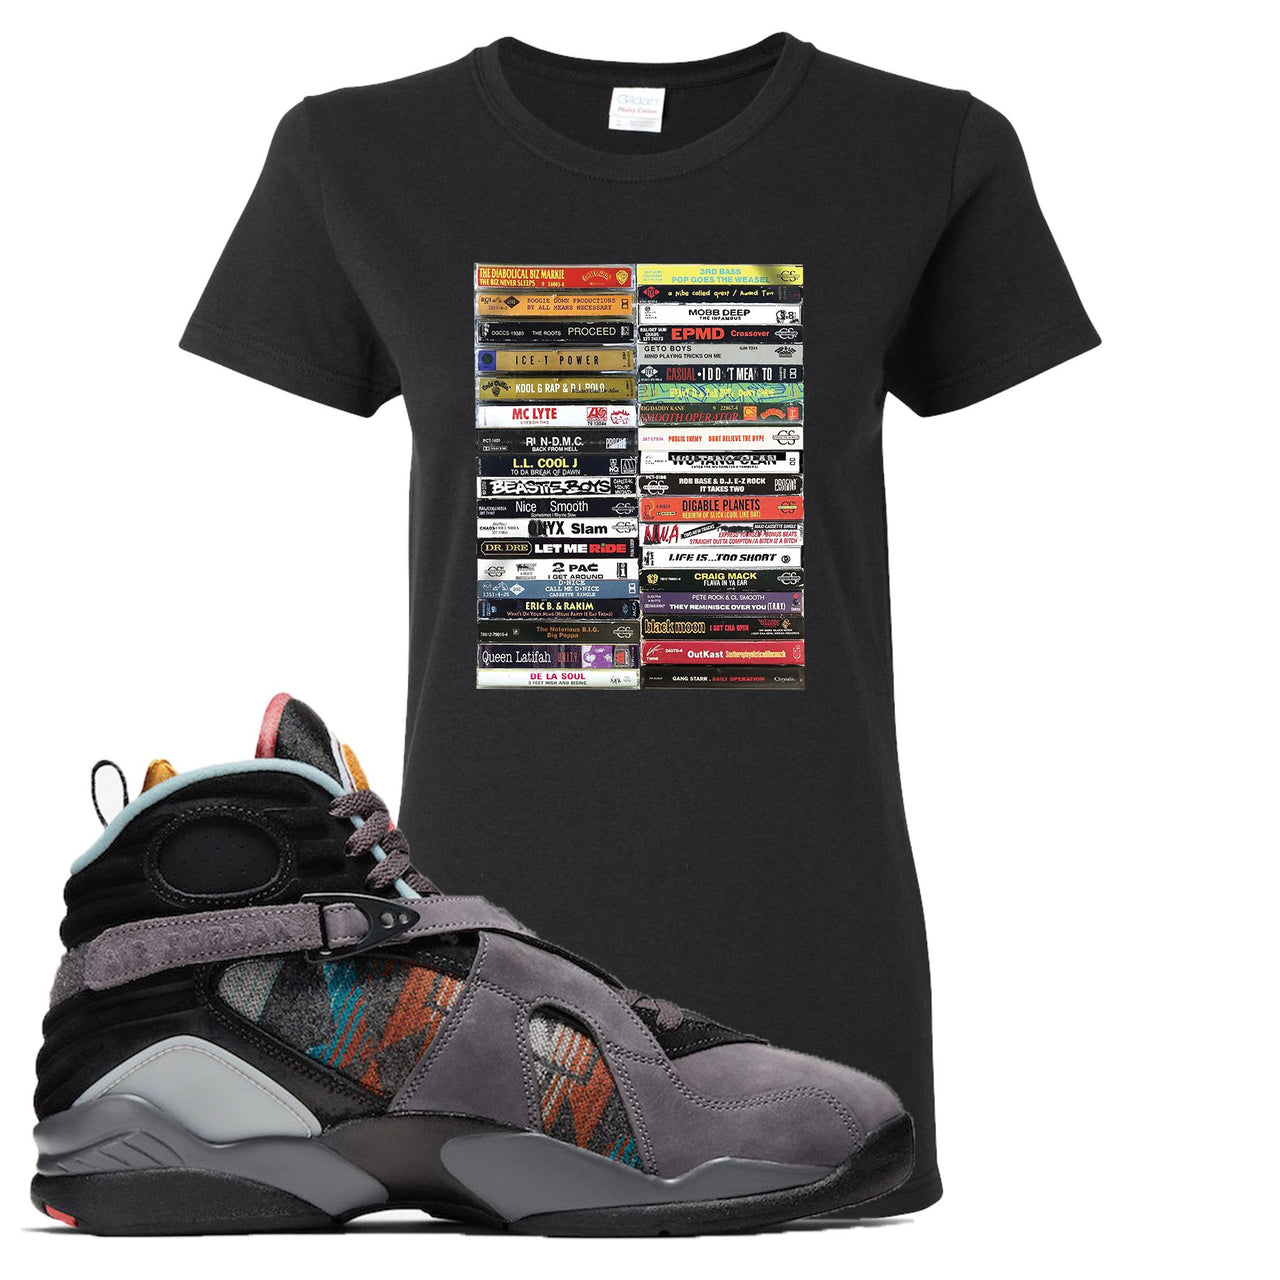 Jordan 8 N7 Pendleton Cassette Black Sneaker Hook Up Women's T-Shirt